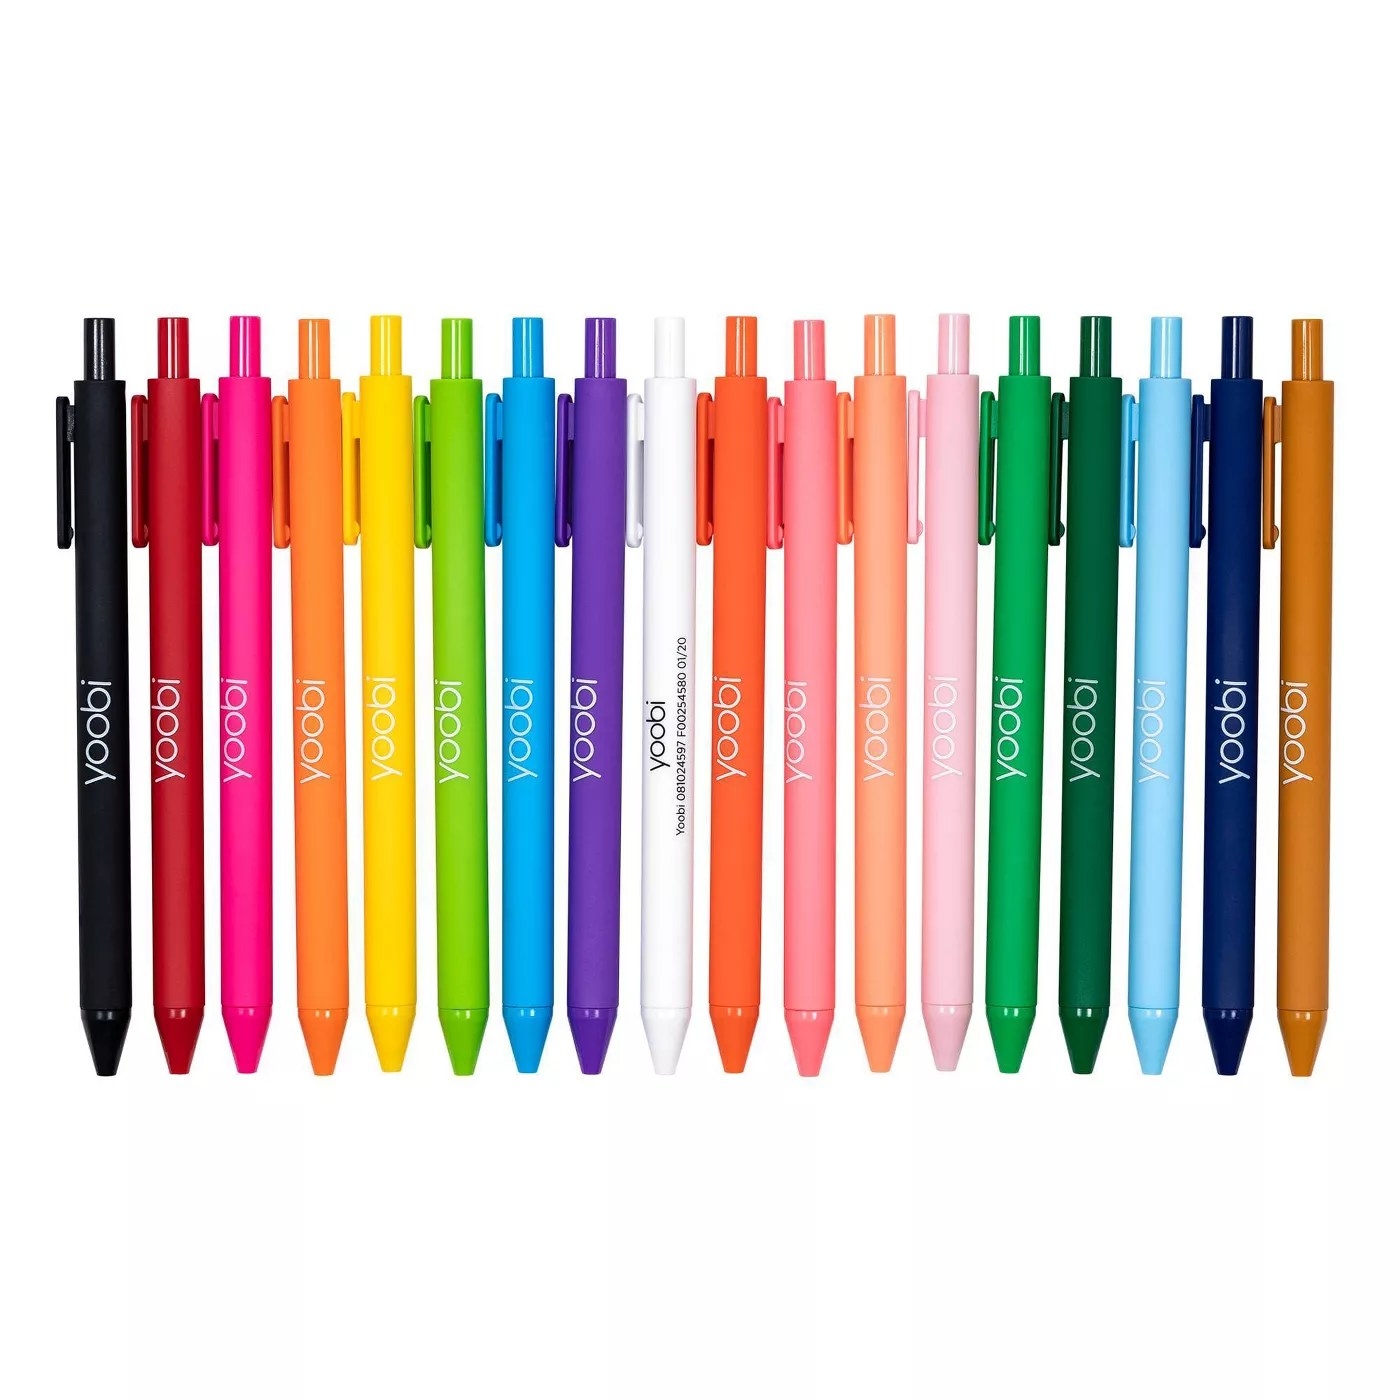 The Yoobi gel pens